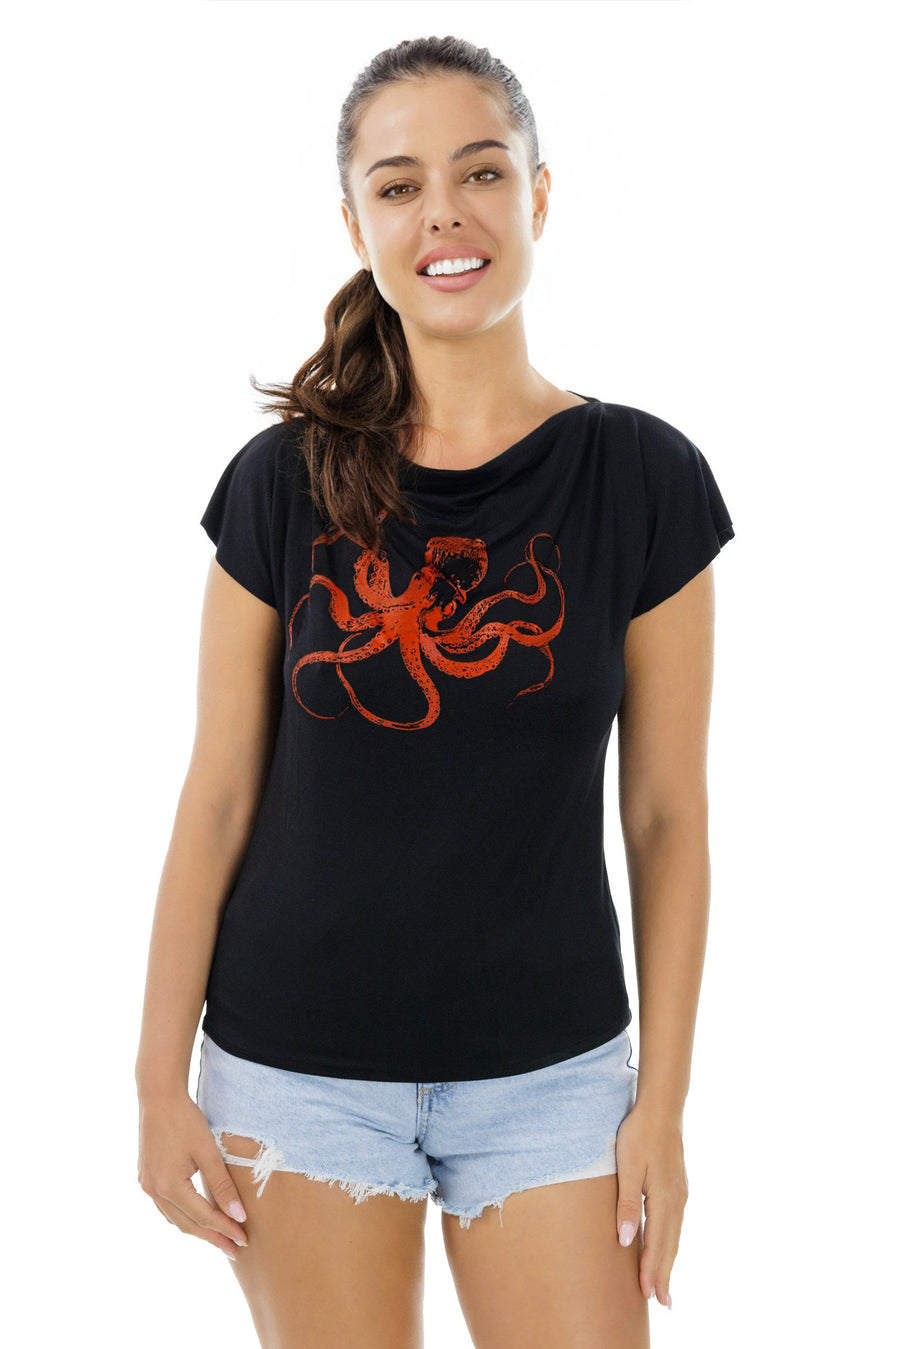 Octopus Cowl Neck Shirt